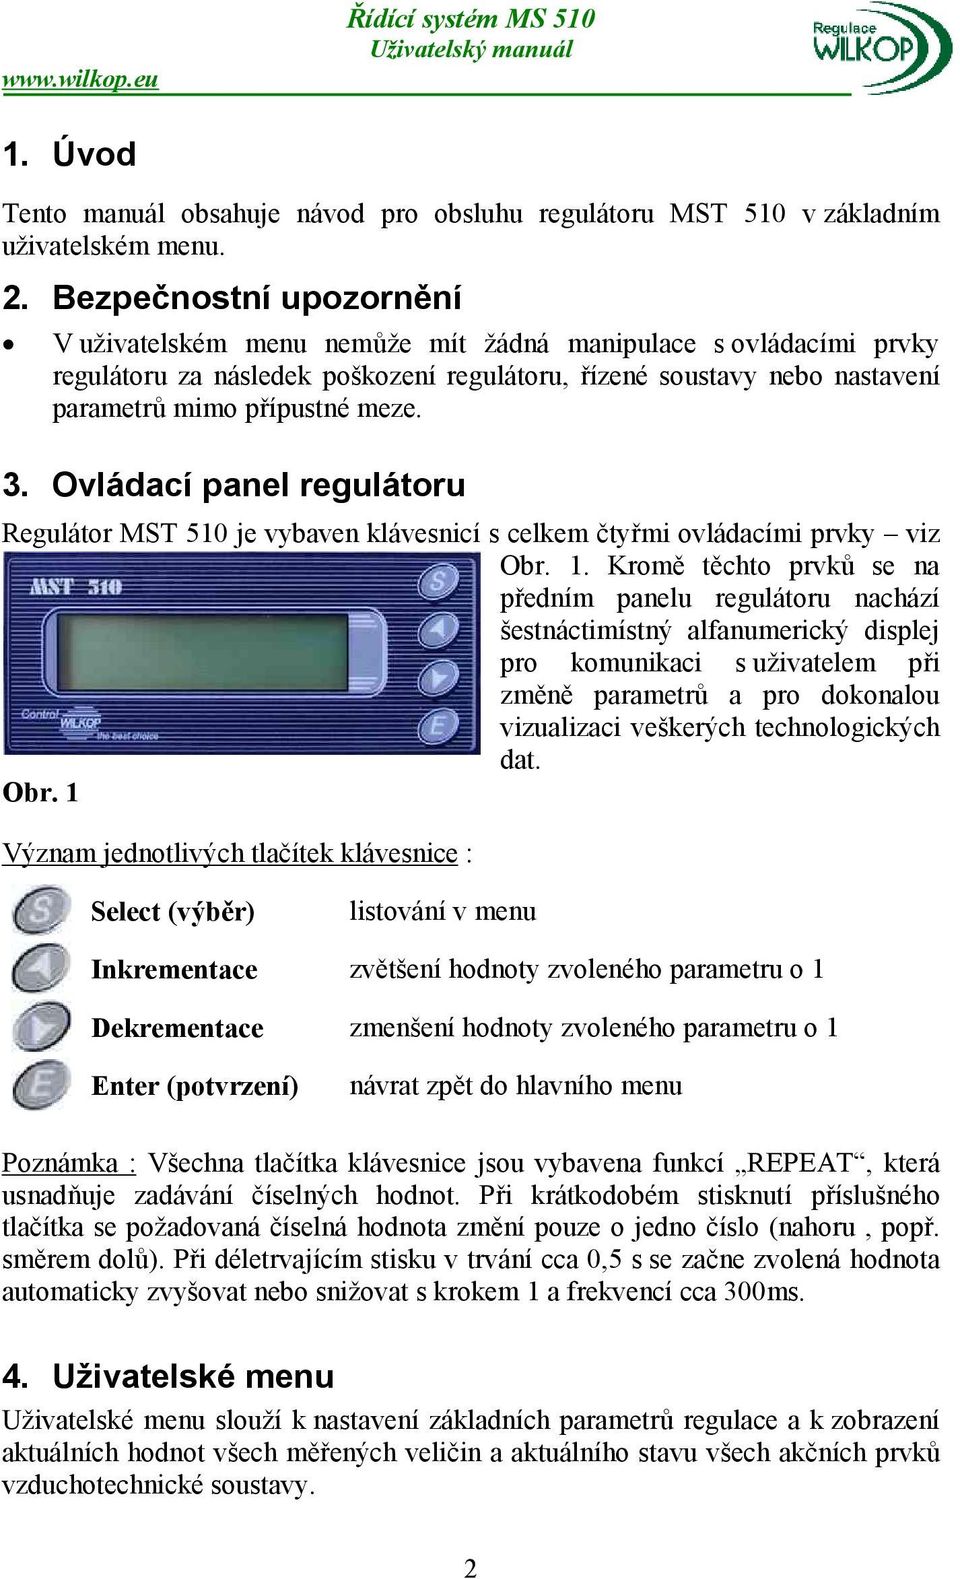 Ovládací panel regulátoru Regulátor MST 510 je vybaven klávesnicí s celkem čtyřmi ovládacími prvky viz Obr. 1.